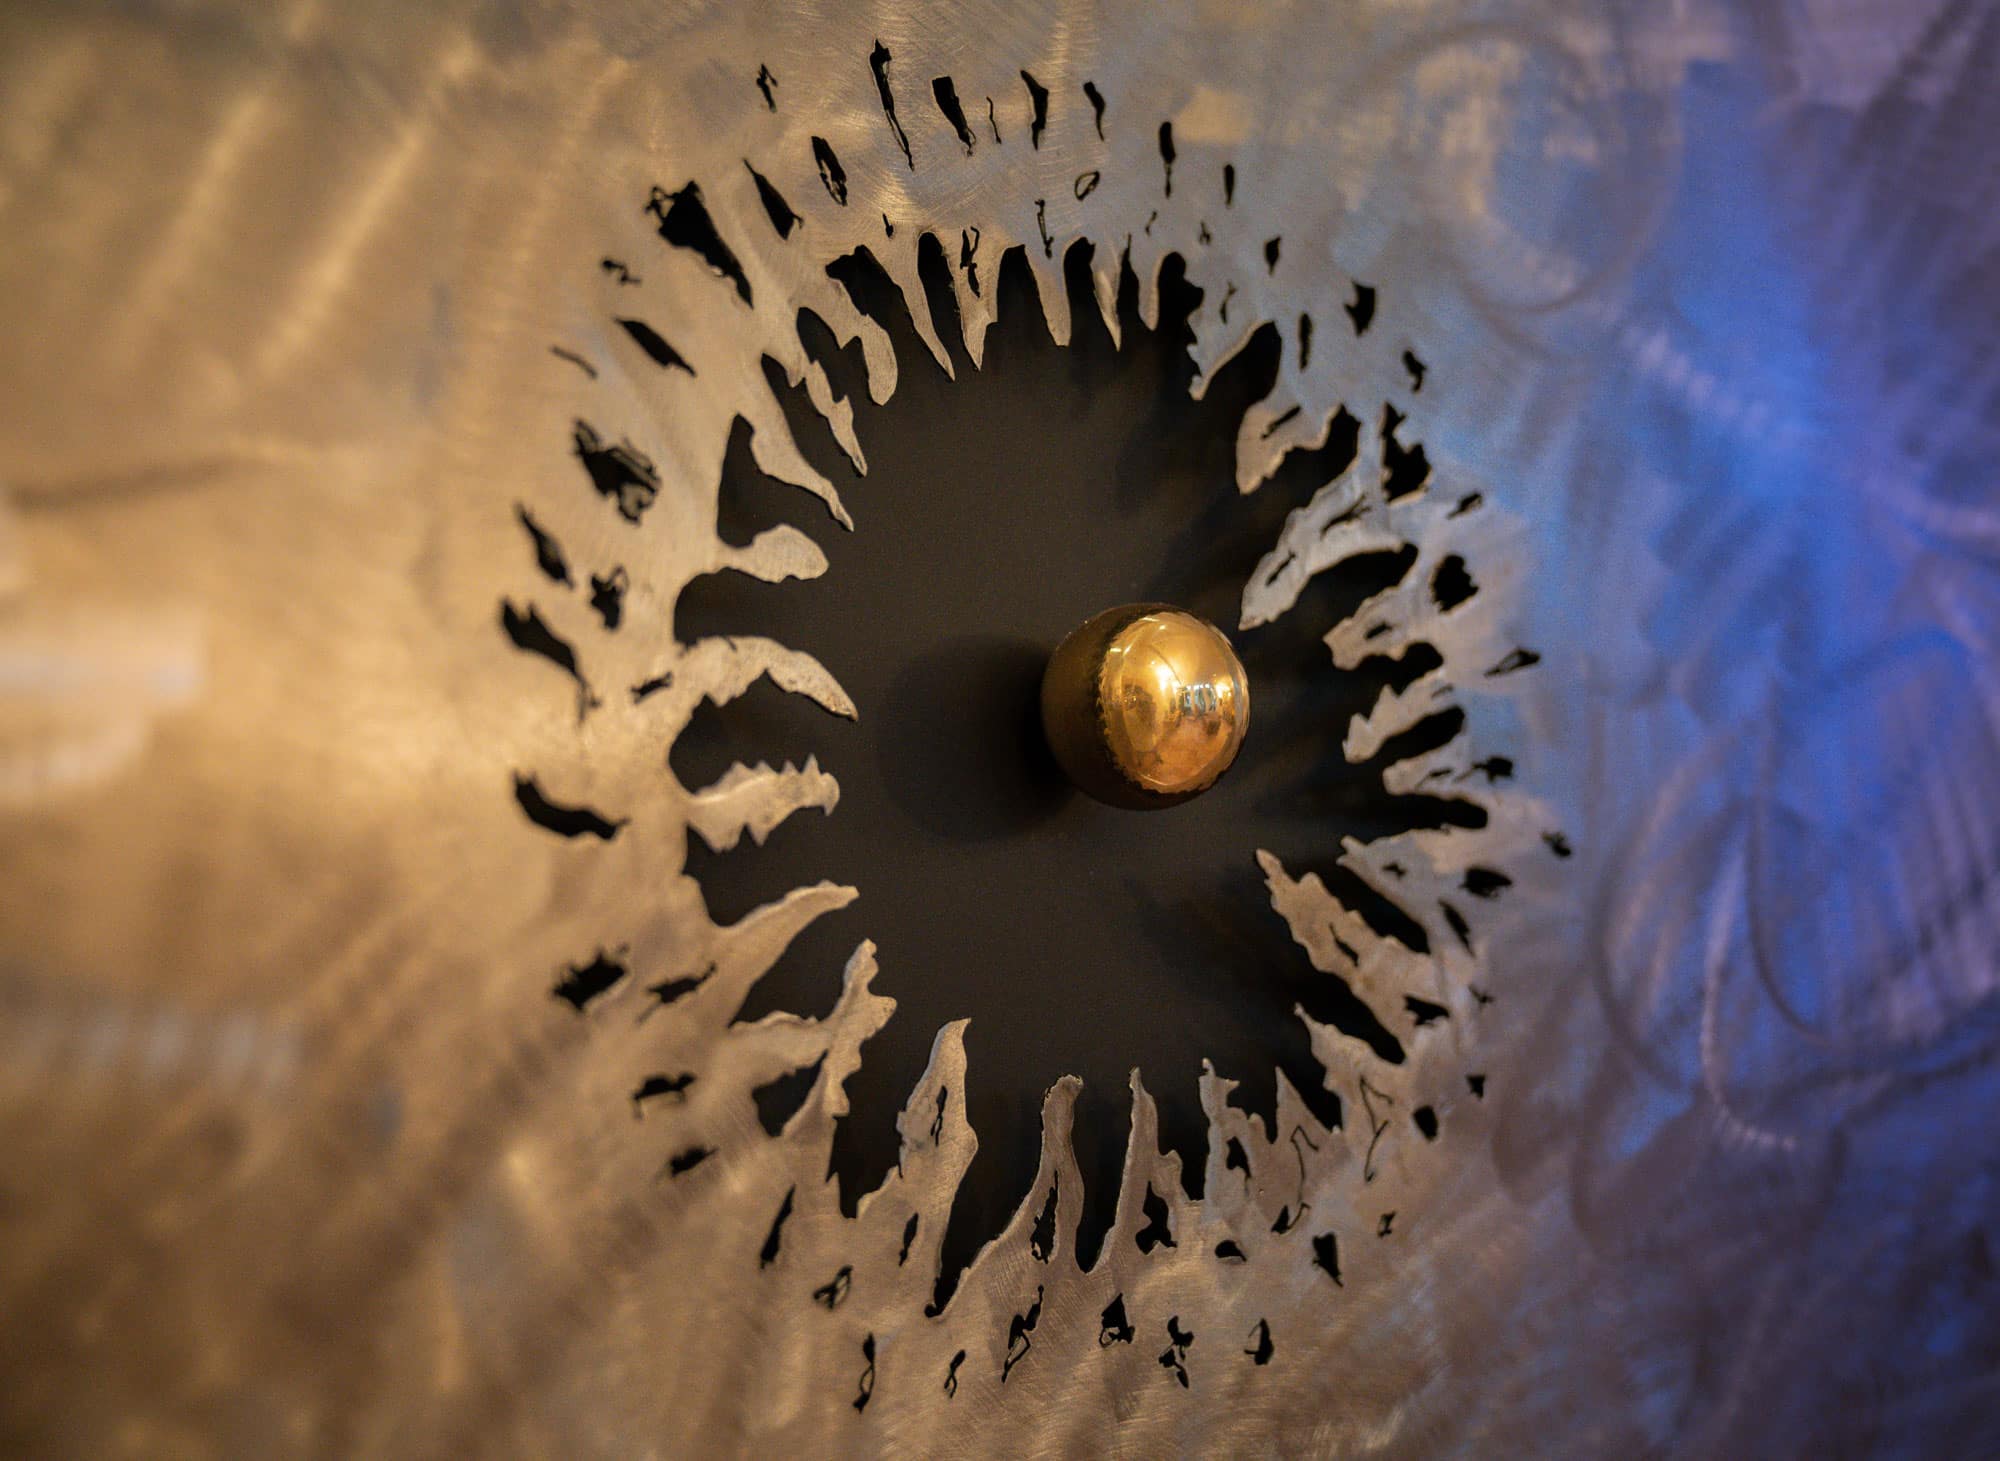 Kunstwerk mit dem Namen „gebogen“. Kugel 24 Karat vergoldet Oberfläche grob geschliffen, Rahmen in Stahl 20 cm. Vom Stahlbildhauer im Atelier Daniel Springer